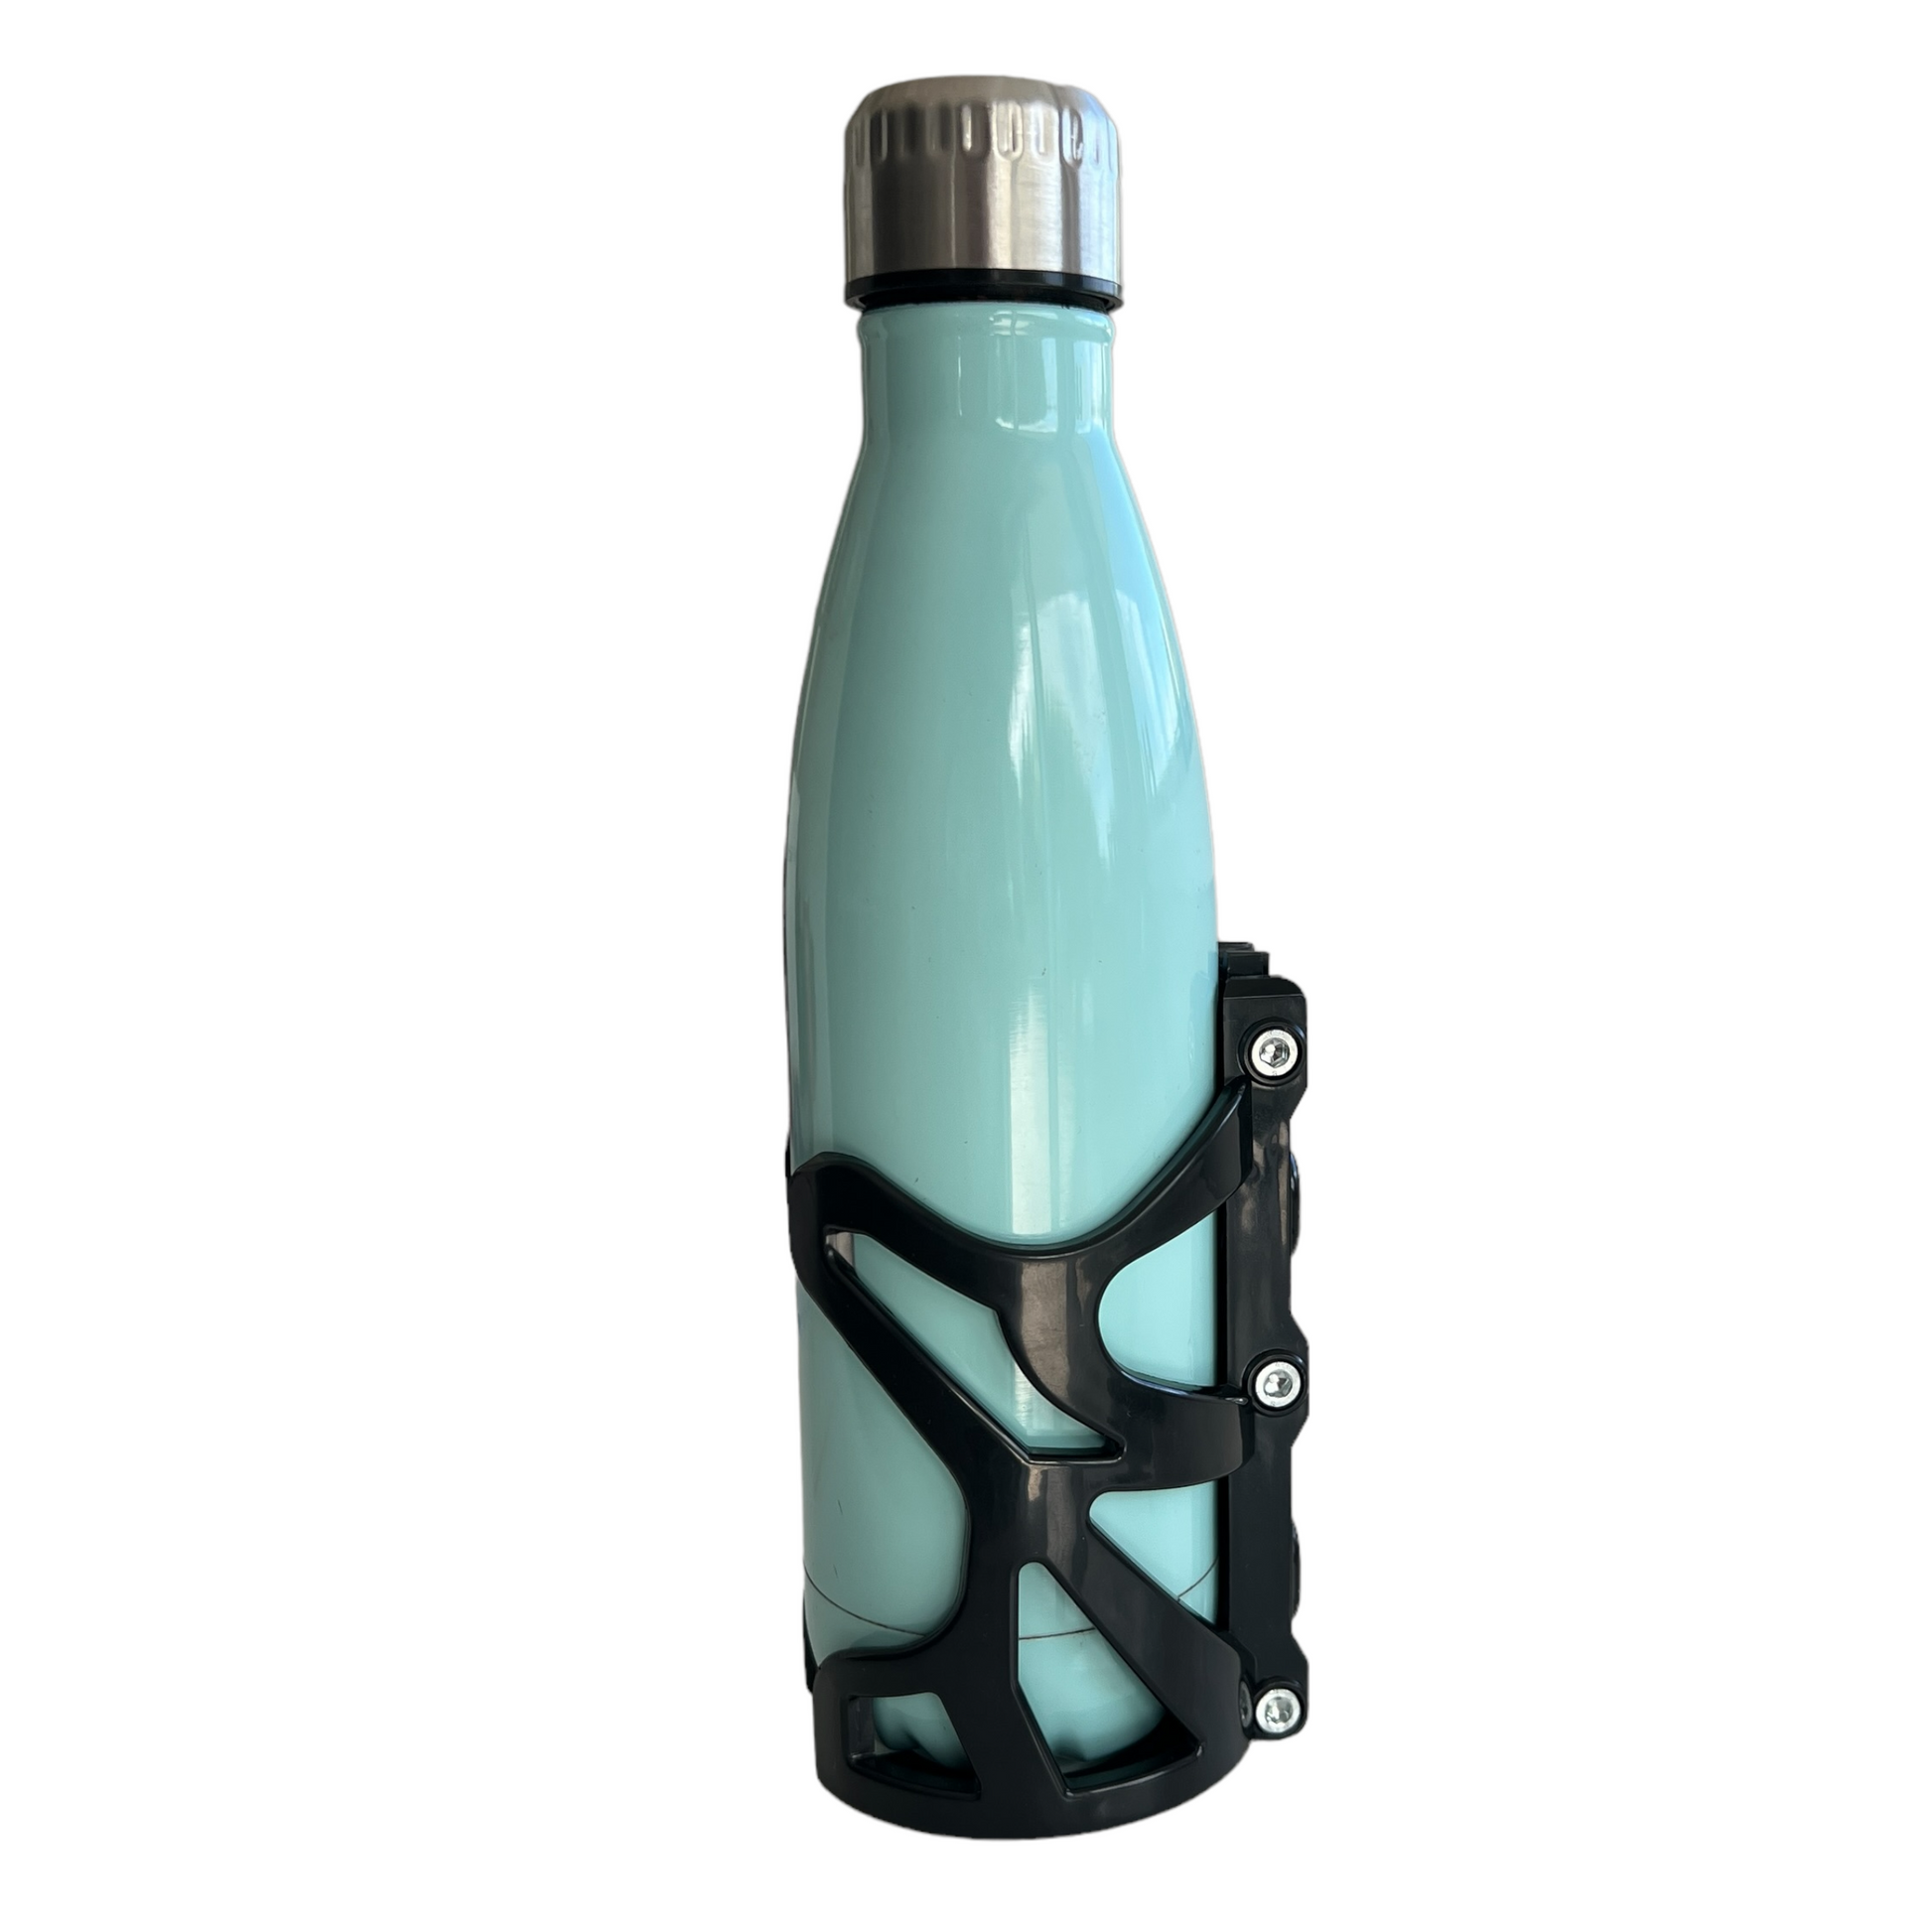 750ml Water Bottle Holder  SPIRIT SPARKPLUGS   